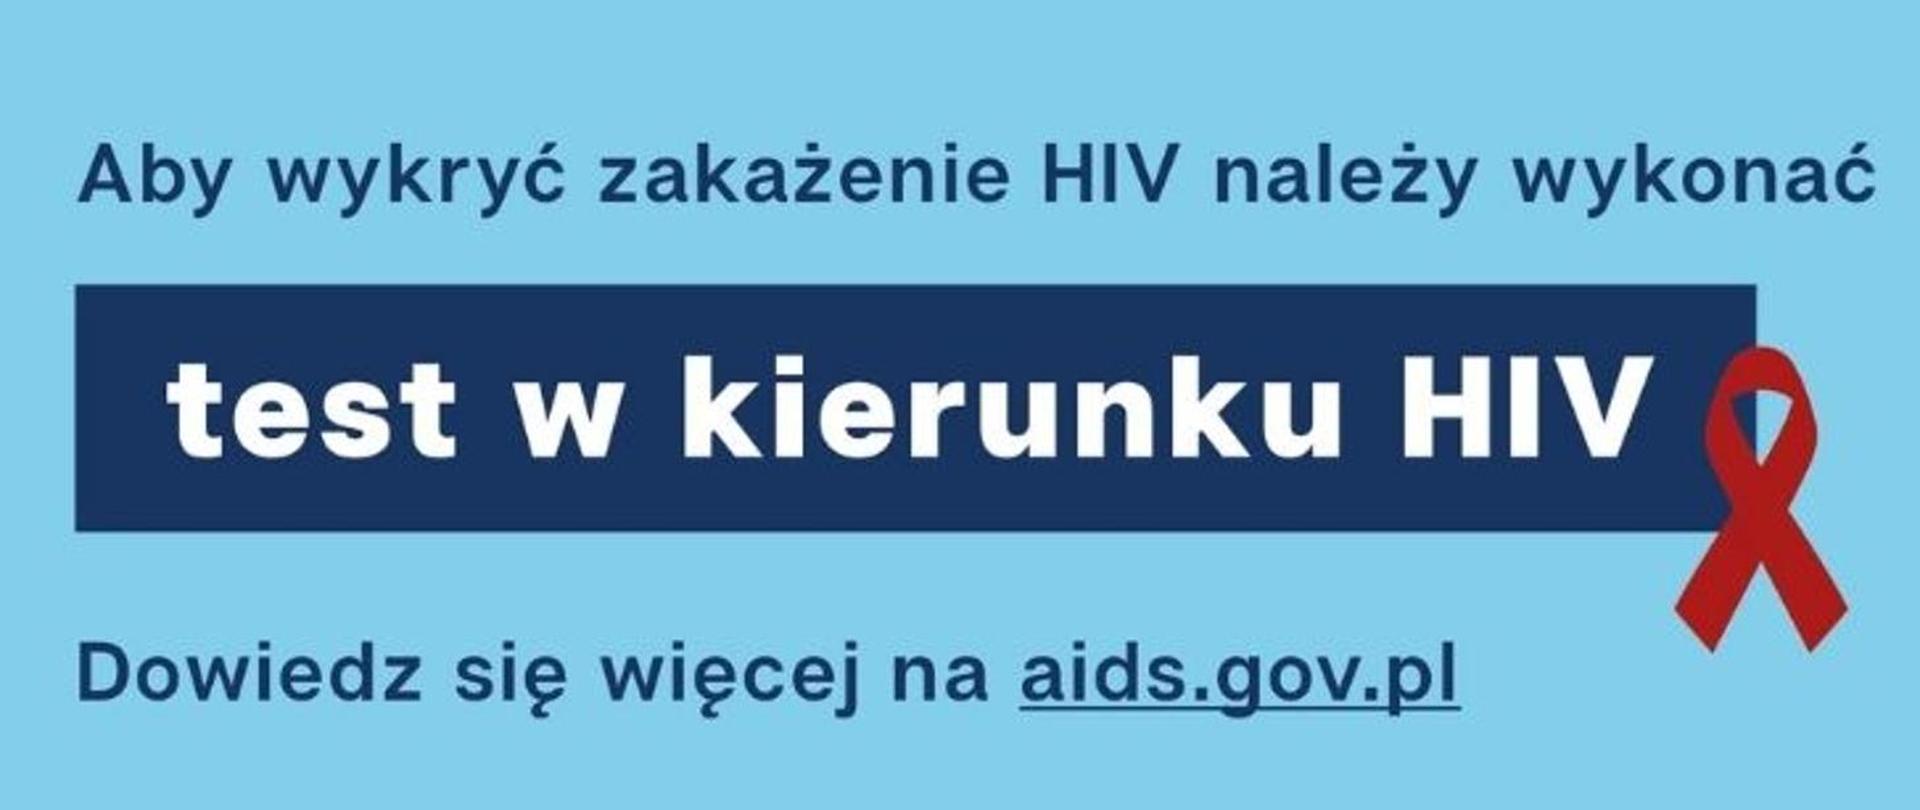 Na zdjęciu widnieje napis: "Aby wykryć zakażenie HIV należy wykonać test w kierunku HIV. Dowiedz się więcej na aids.gov.pl